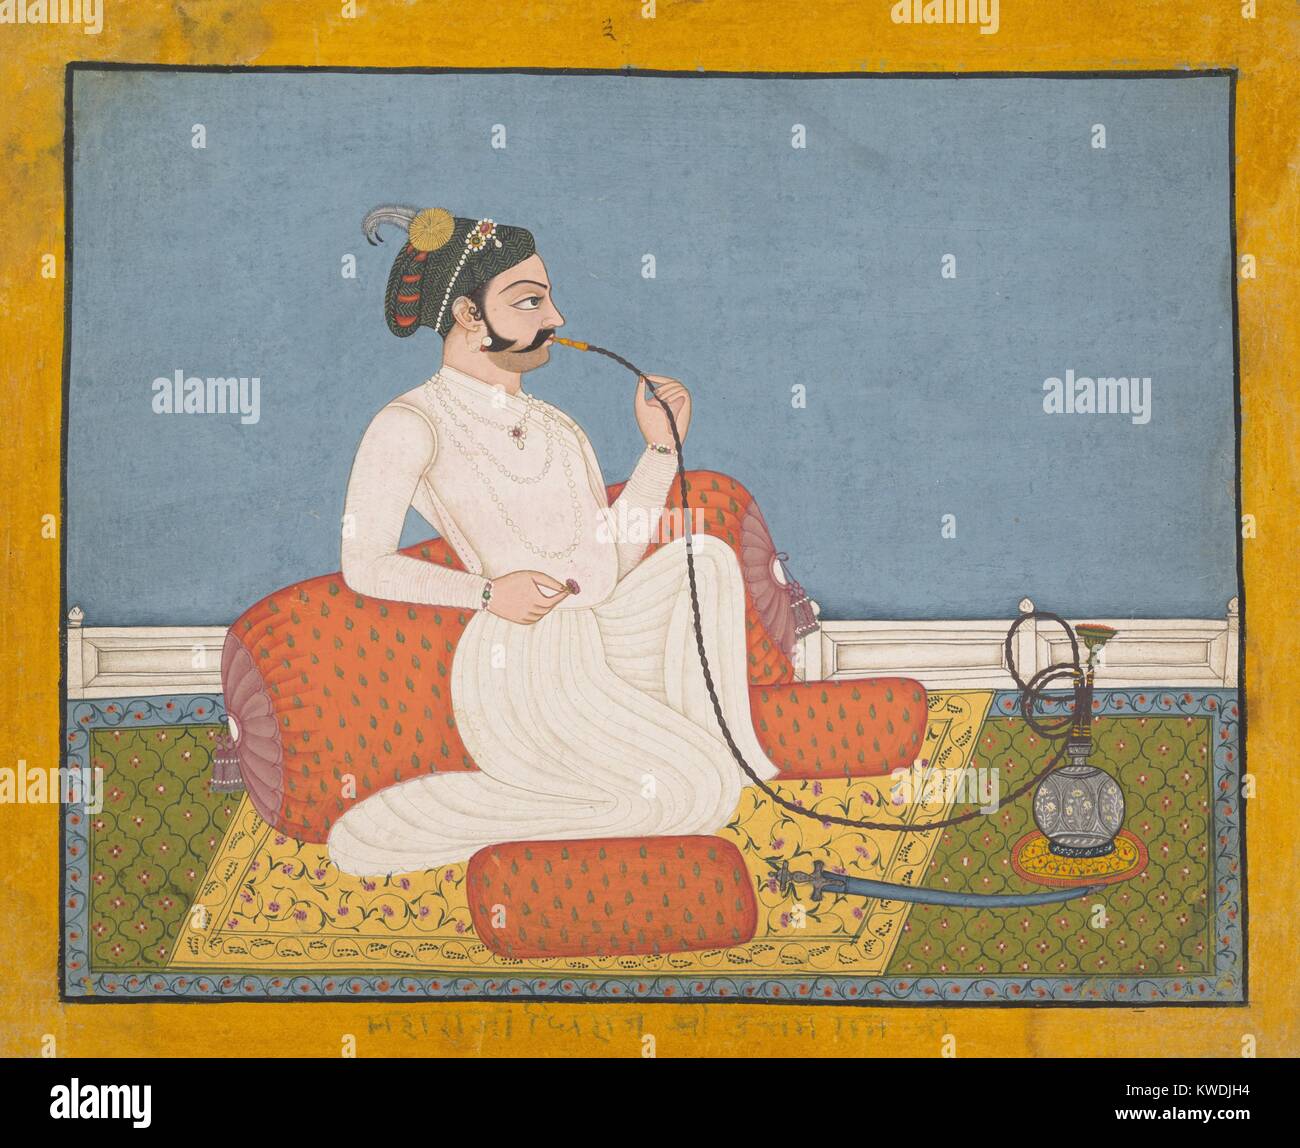 PORTRAIT von THAKUR UTHAM RAM, 1750-60 s, Indische Malerei, Tinte, opak Aquarell, Silber auf Papier. Ein Mann der Rajput Elite, lässt auf ein Kissen und raucht eine Shisha in einem Innenraum mit Teppichen (BSLOC 2017 16 24) Stockfoto